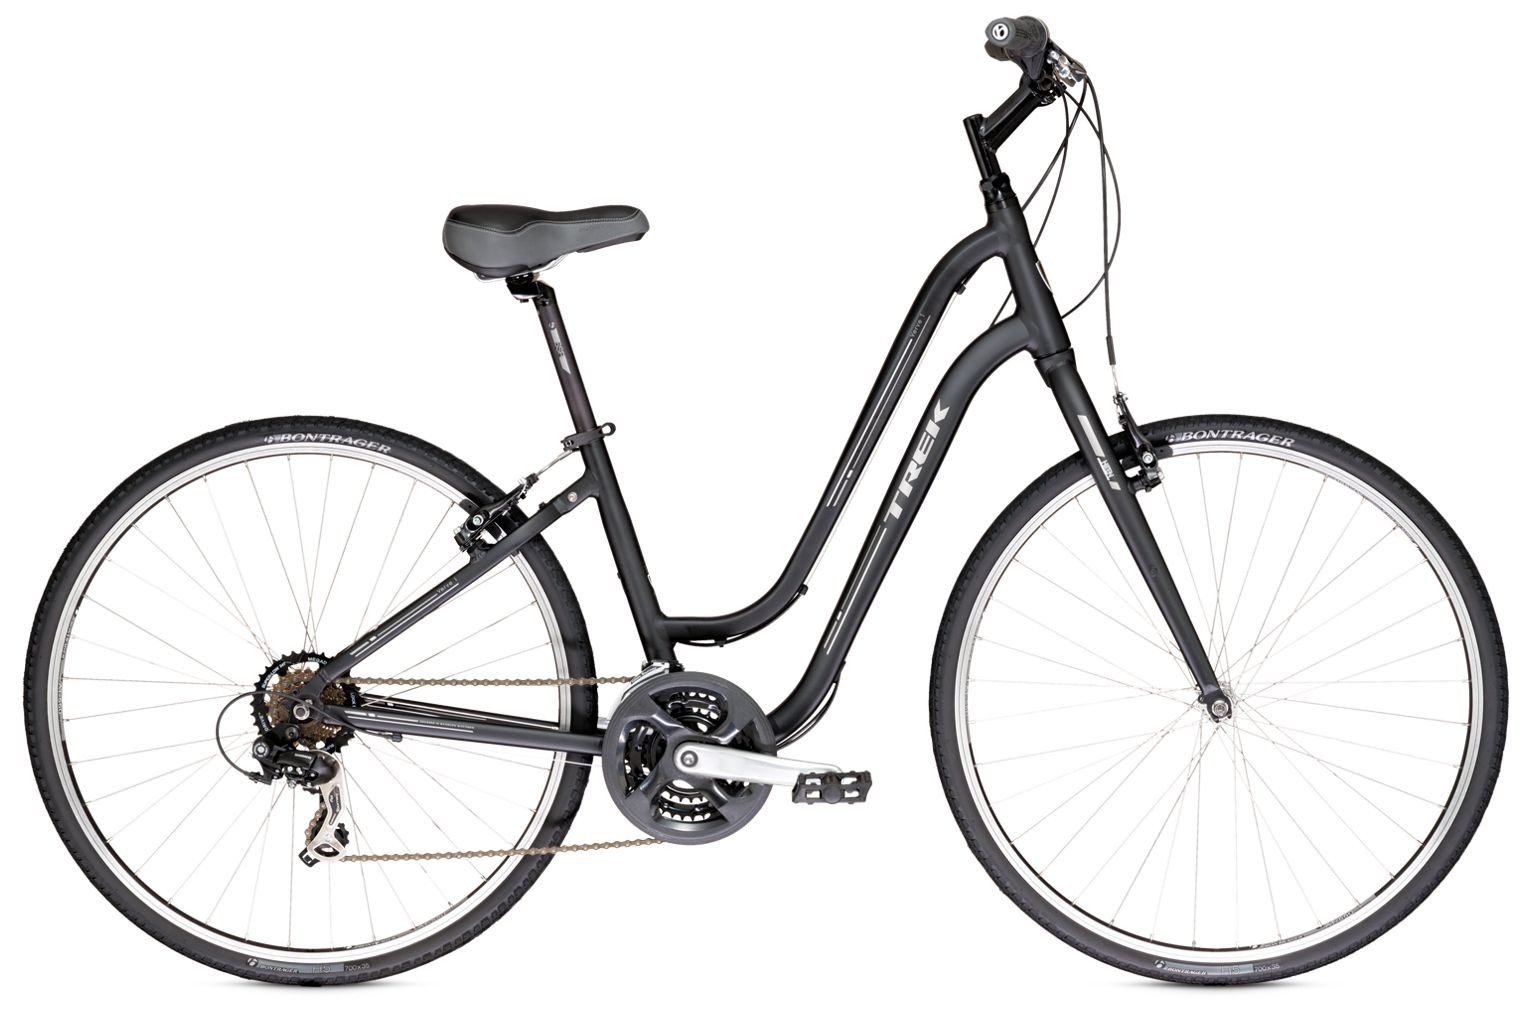  Велосипед Trek Verve 1 WSD 2014